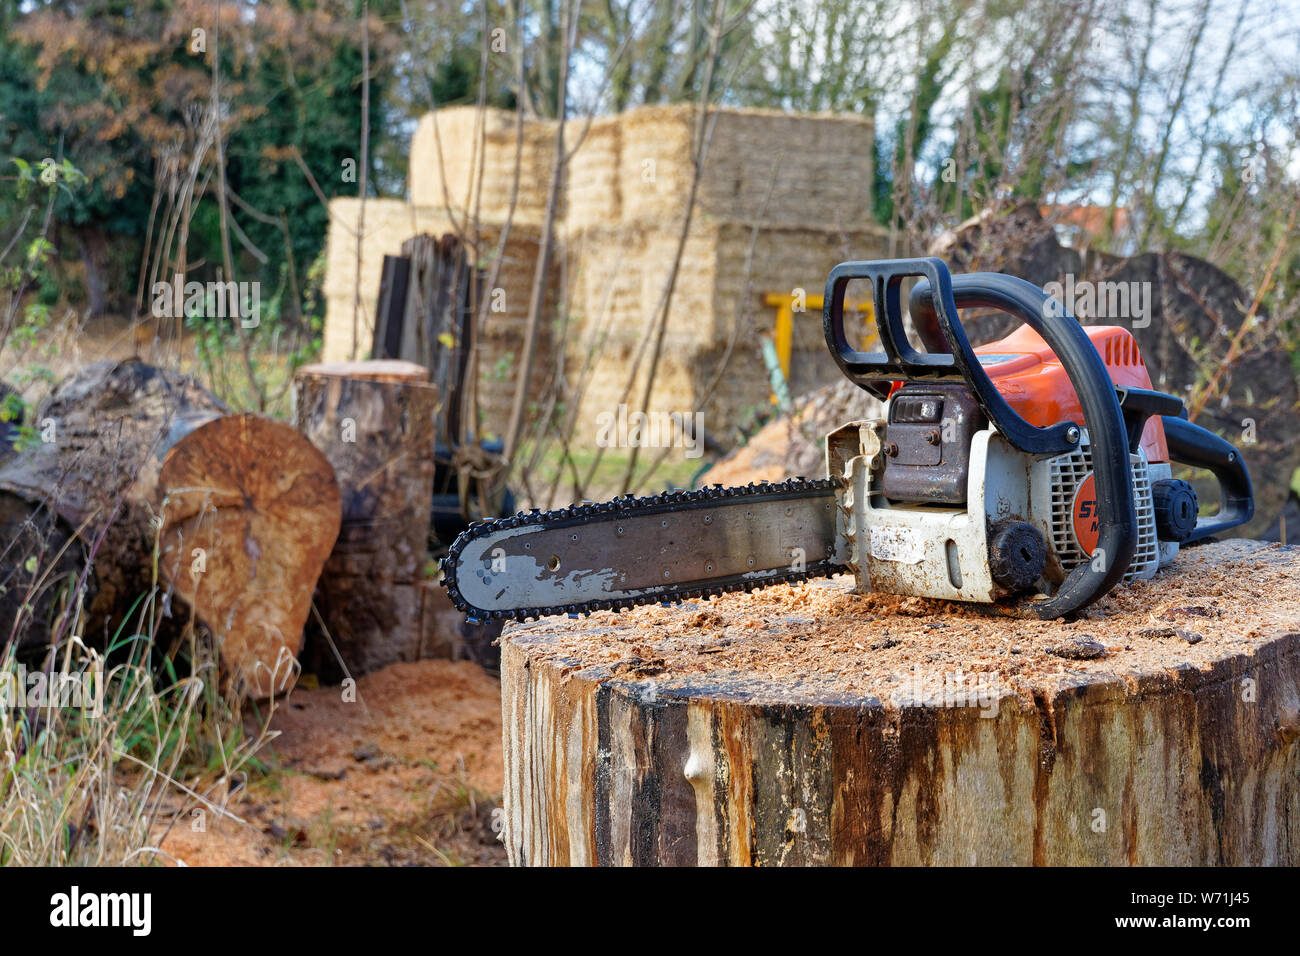 Un bene usato Stihl MS180 chainsaw seduto su una segatura registro coperto vicino a un mucchio di legno Foto Stock